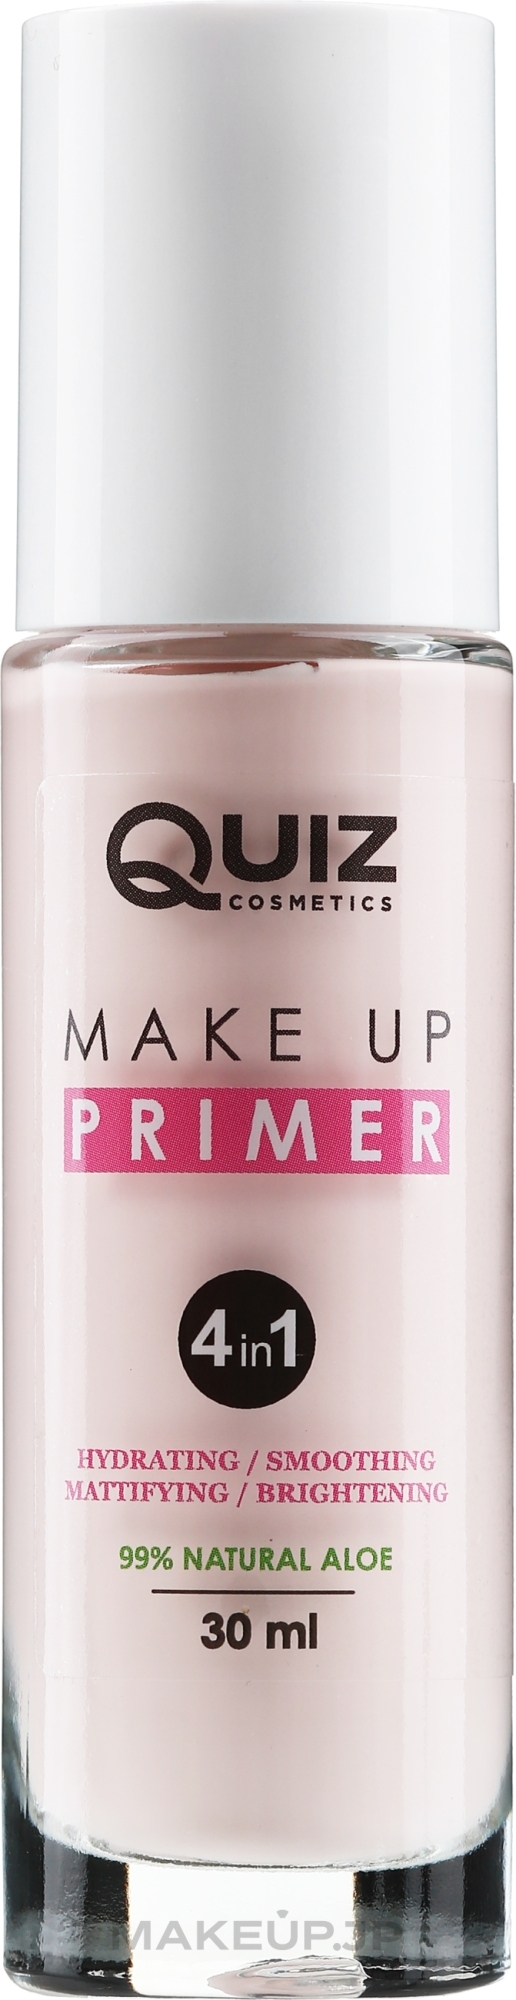 4-in-1 Primer - Quiz Cosmetics Make Up Primer 4 In 1 — photo 30 ml